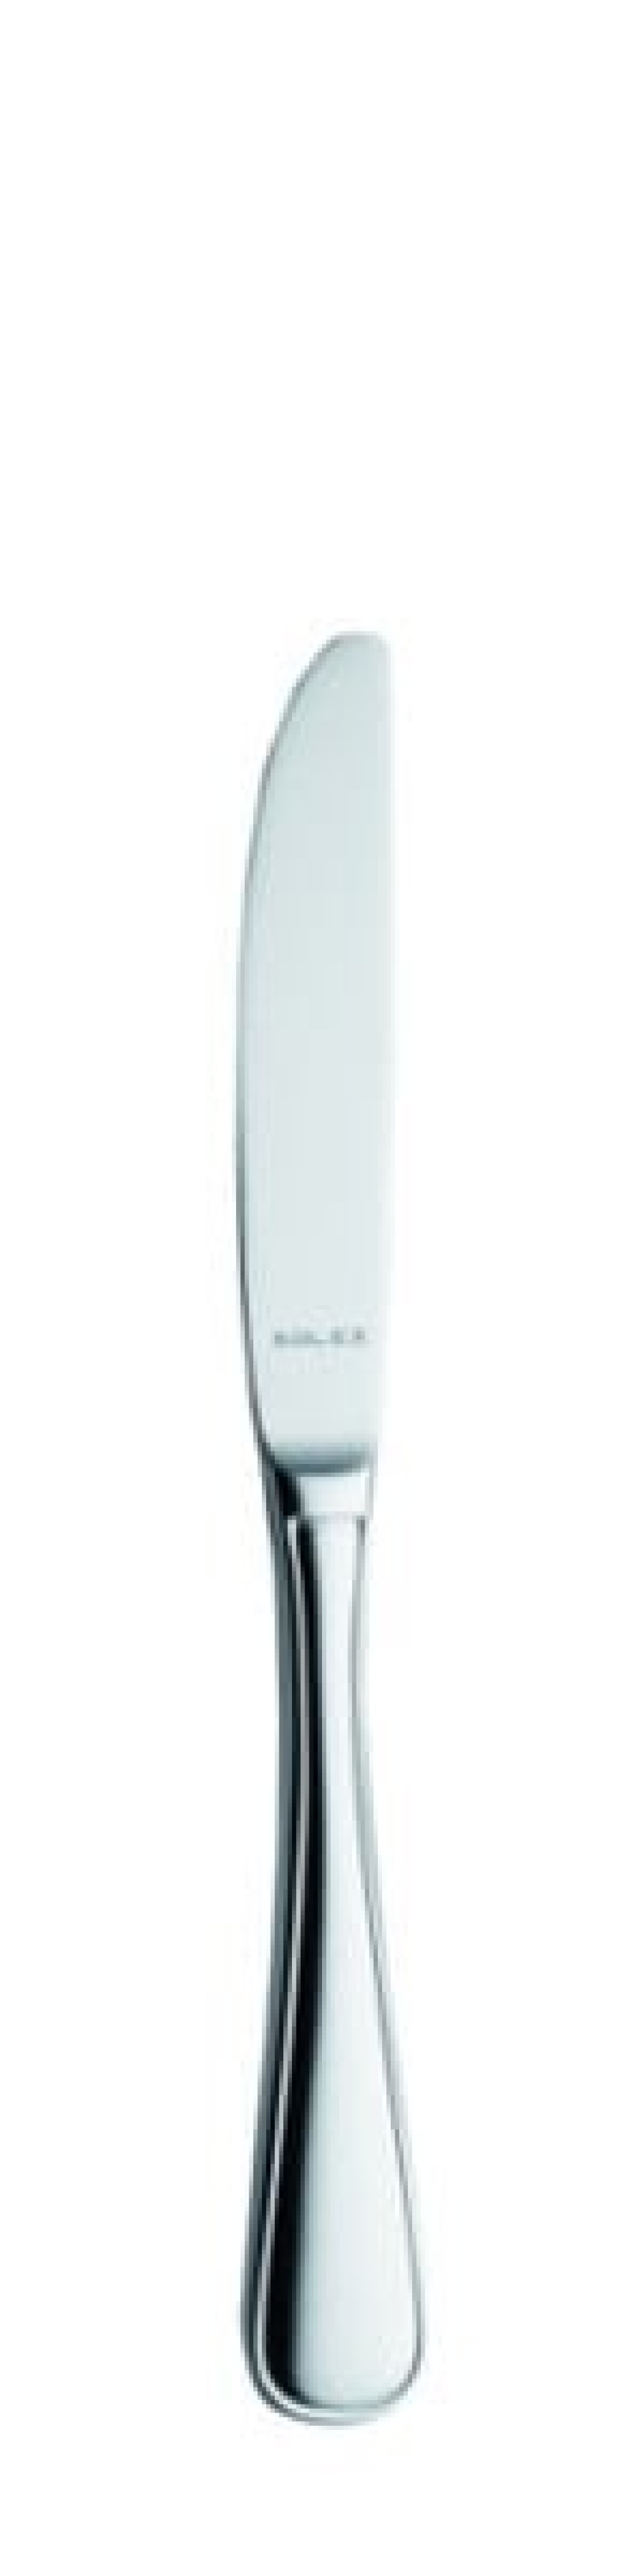 Selina Tafelmesser 225 mm - Solex in der Gruppe Tischgedeck / Besteck / Messer bei The Kitchen Lab (1284-21522)